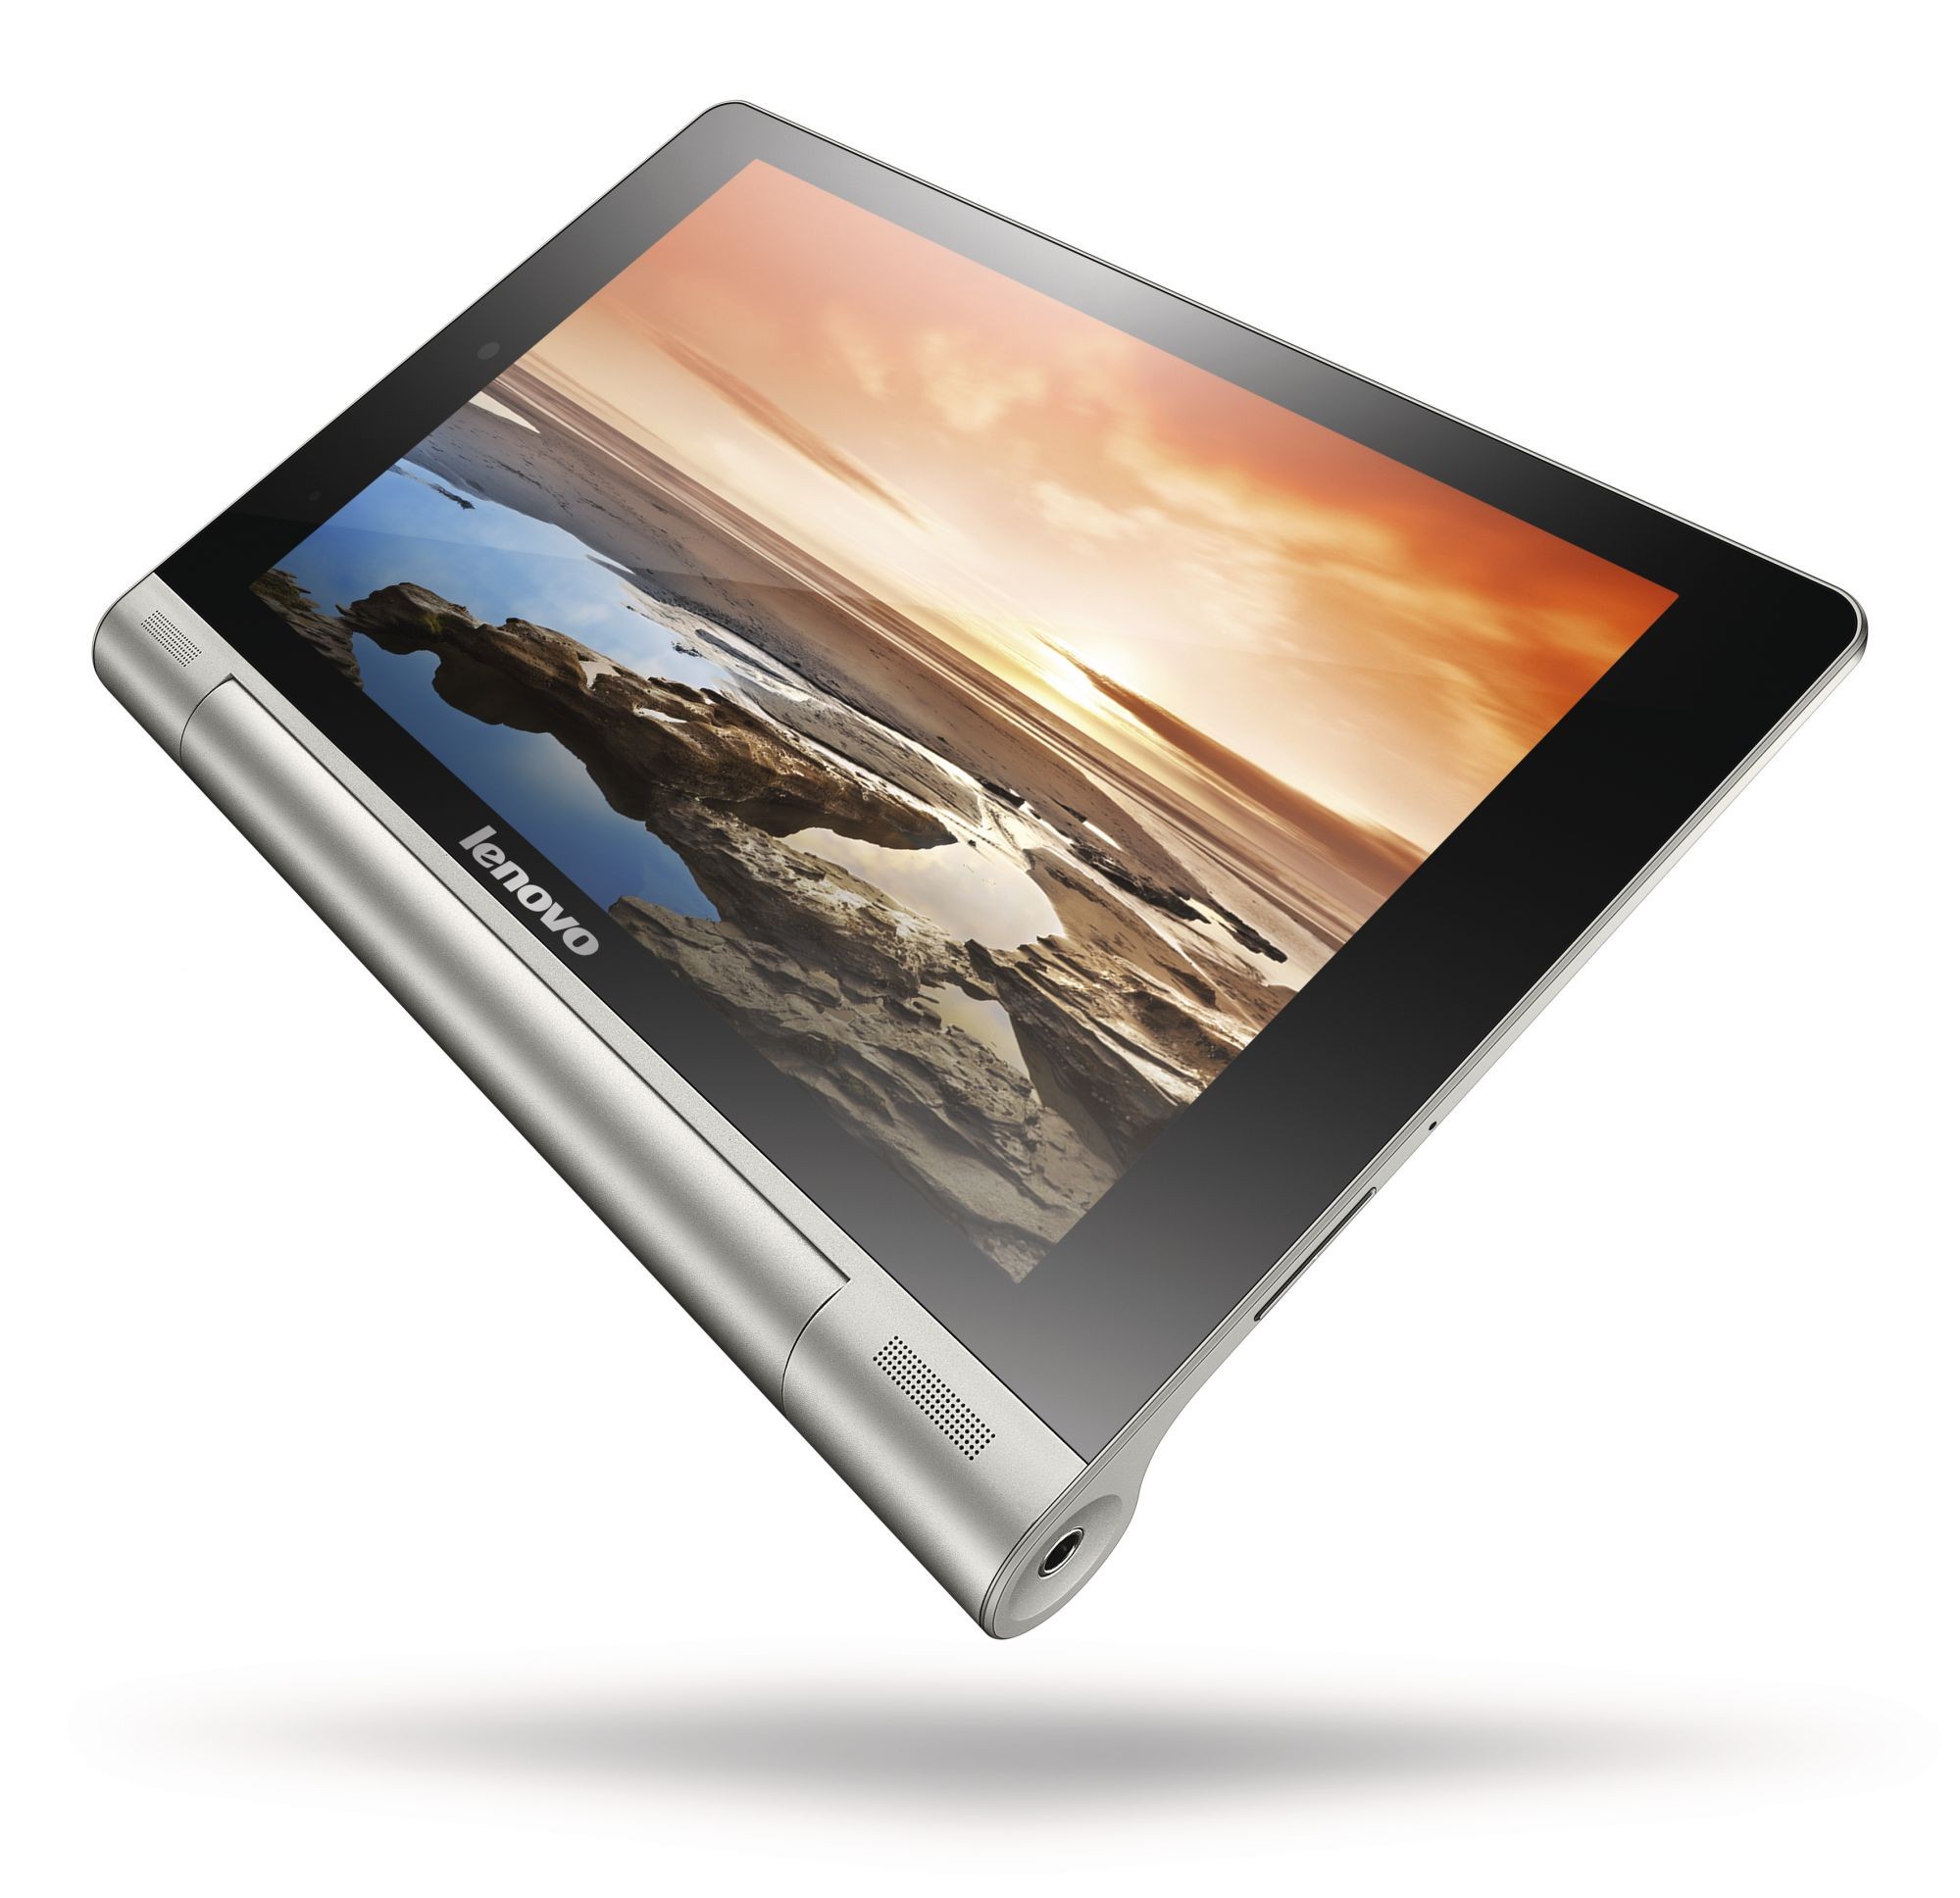 Купить планшет в орле. Планшет Lenovo Yoga Tablet 8 3 1gb 16gb. Планшет Lenovo Yoga Tablet 8 16gb 3g. Lenovo Yoga Tablet 10 b8000. Lenovo Yoga планшет 10 дюймов.